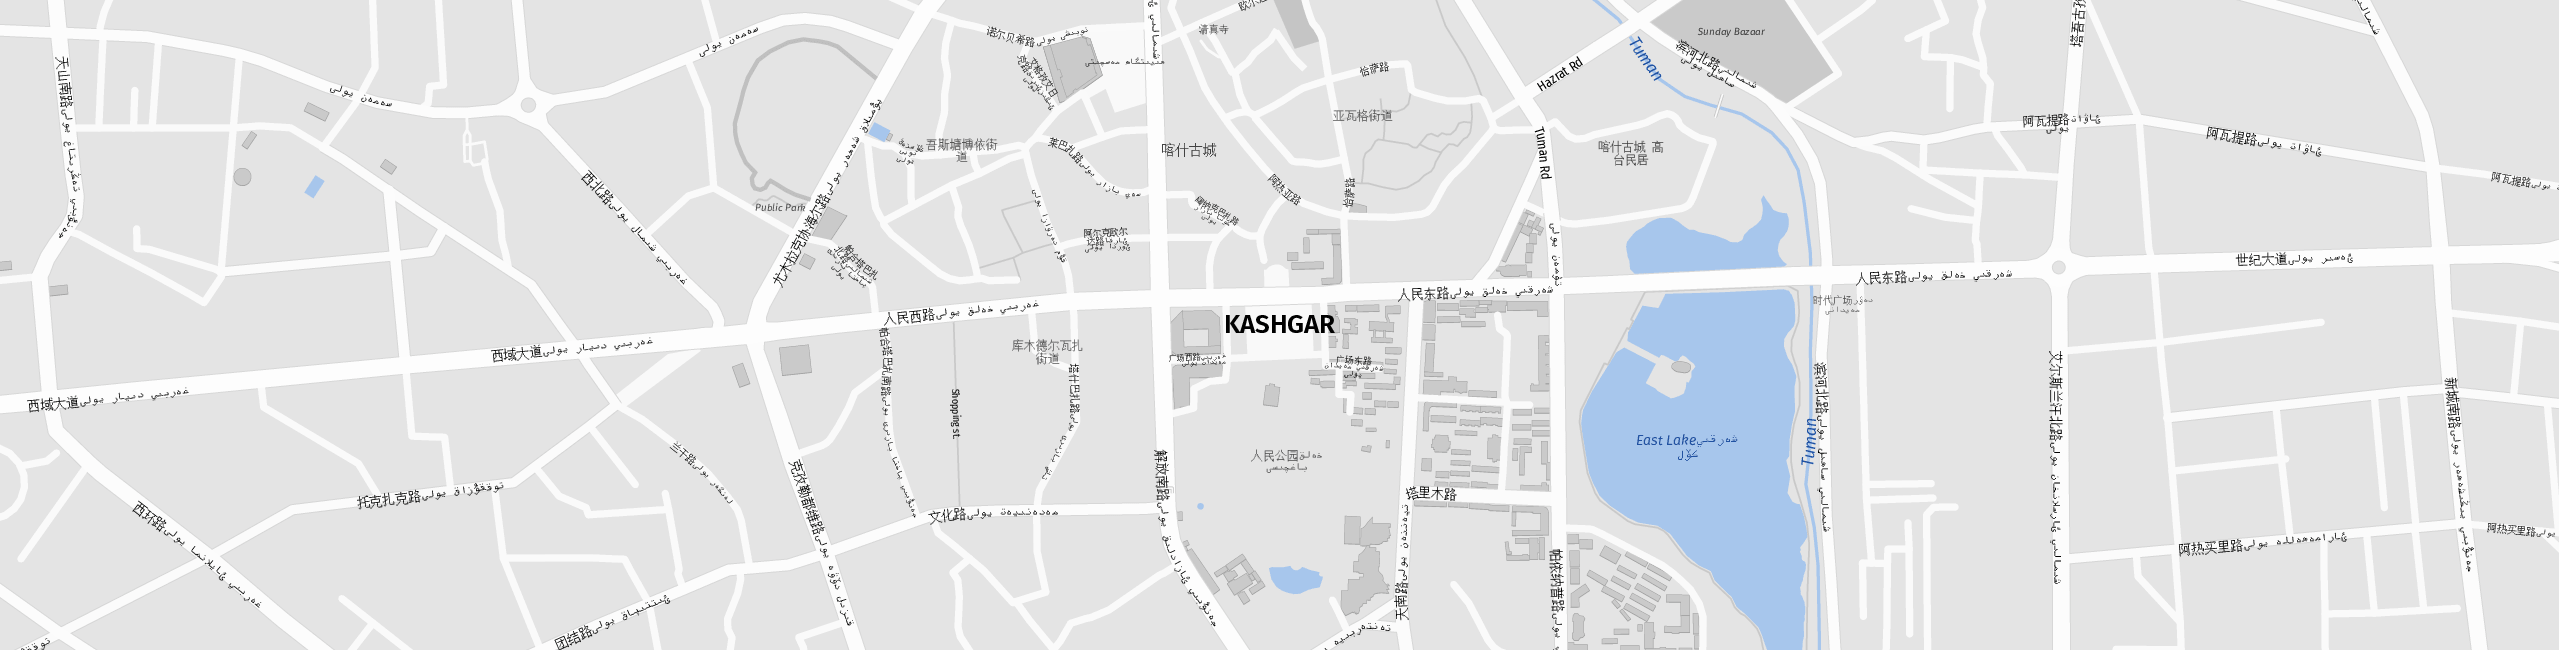 Stadtplan Kaschgar zum Downloaden.